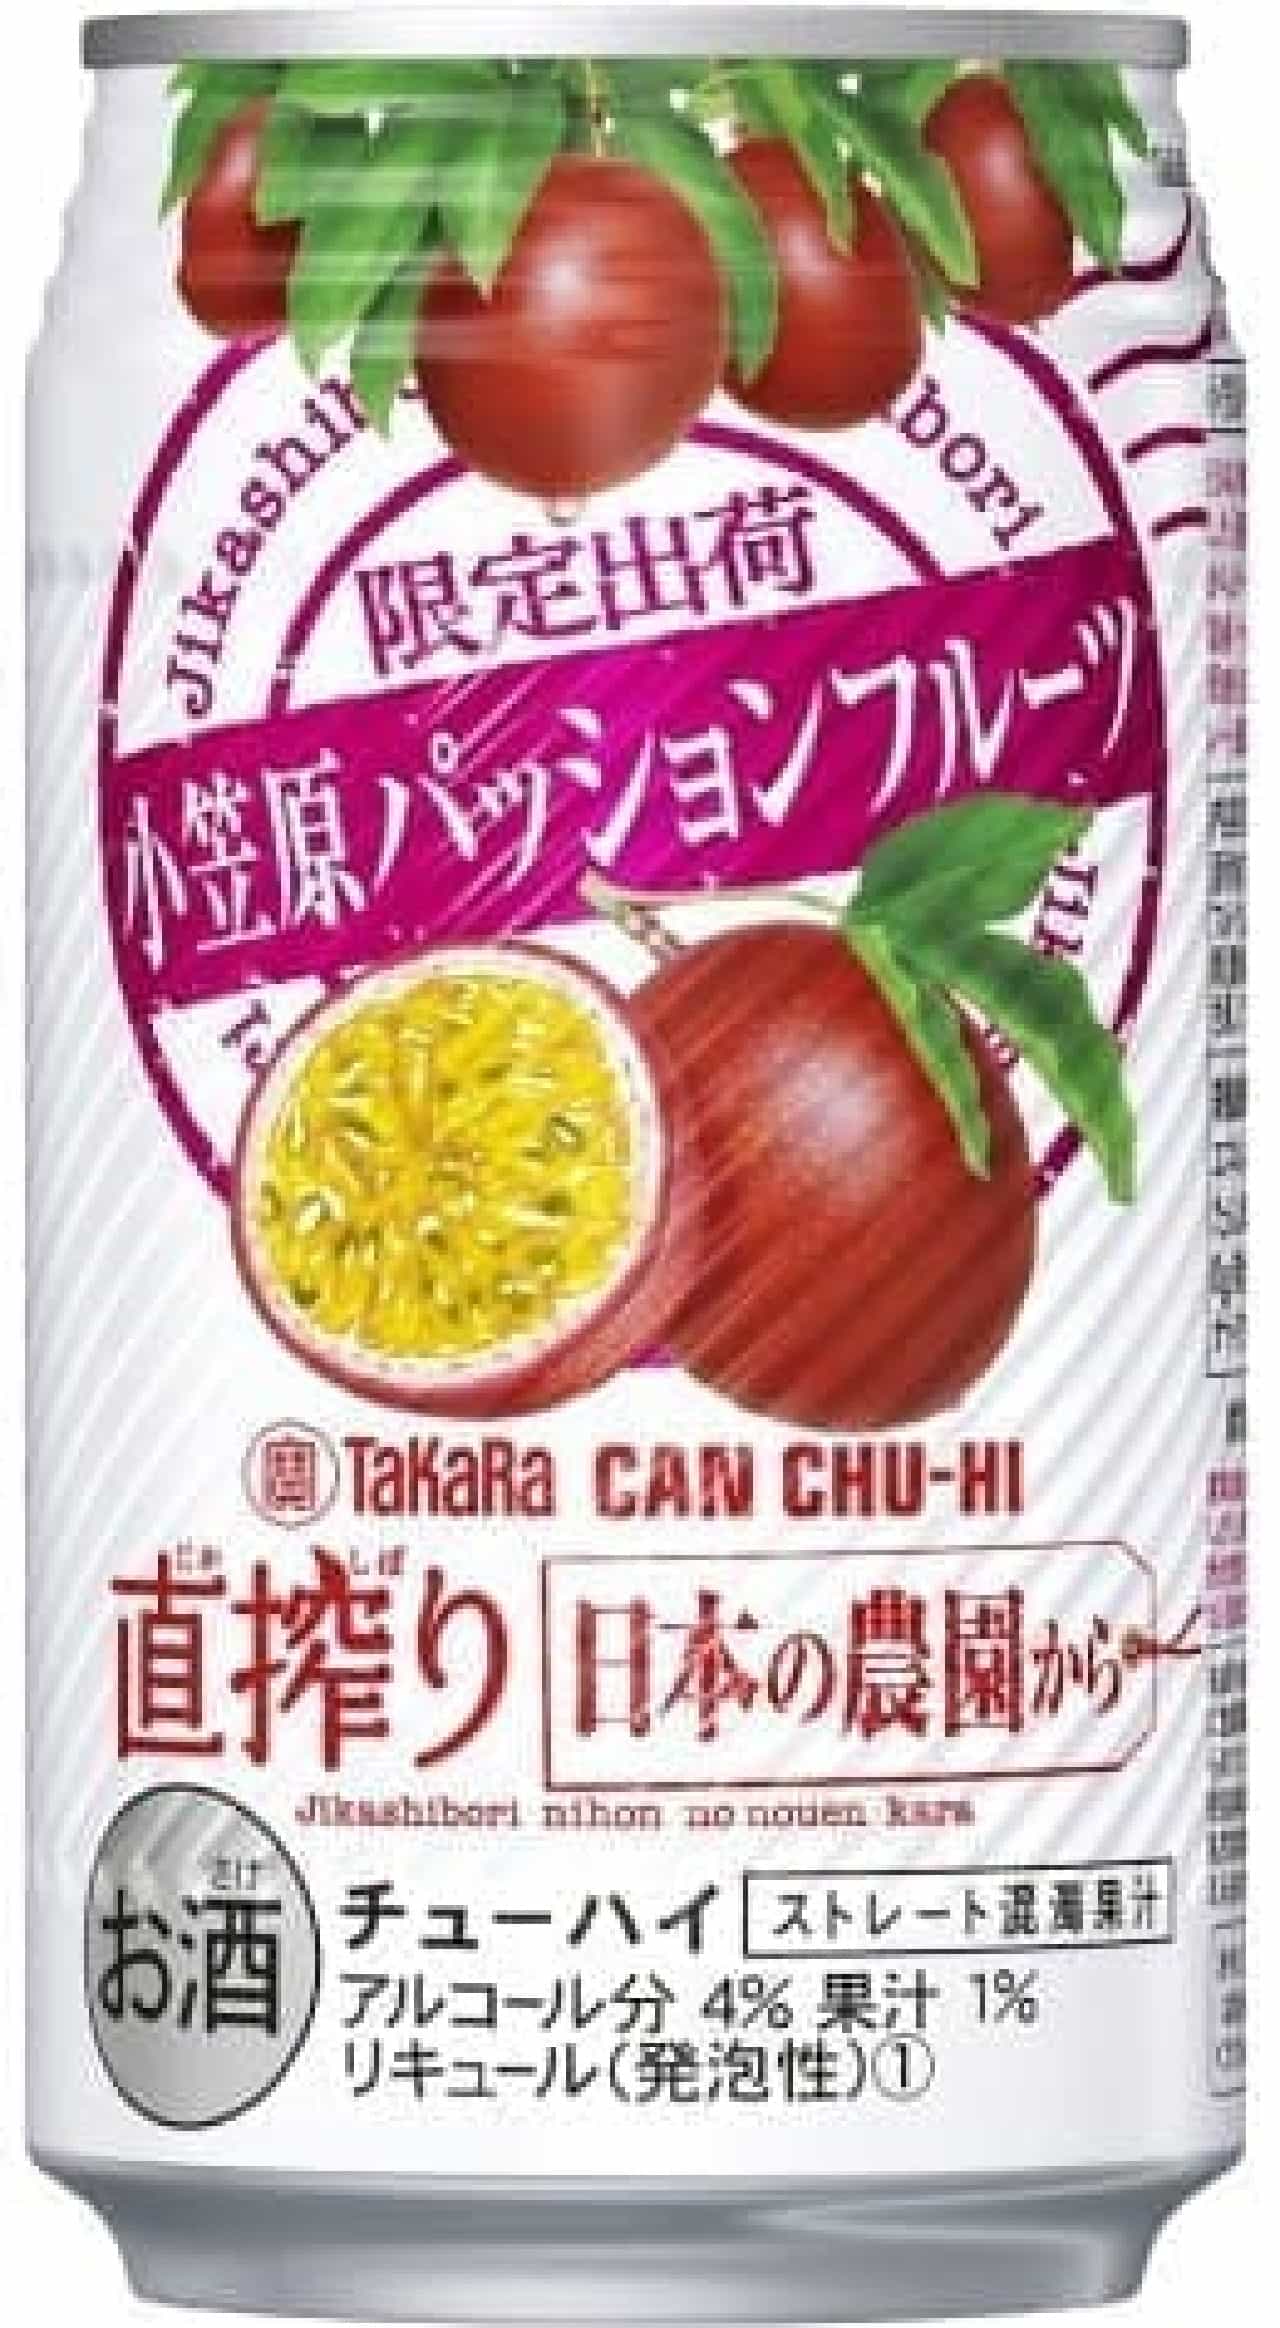 「タカラCANチューハイ『直搾り』日本の農園から」シリーズの人気フレーバー「小笠原パッションフルーツ」